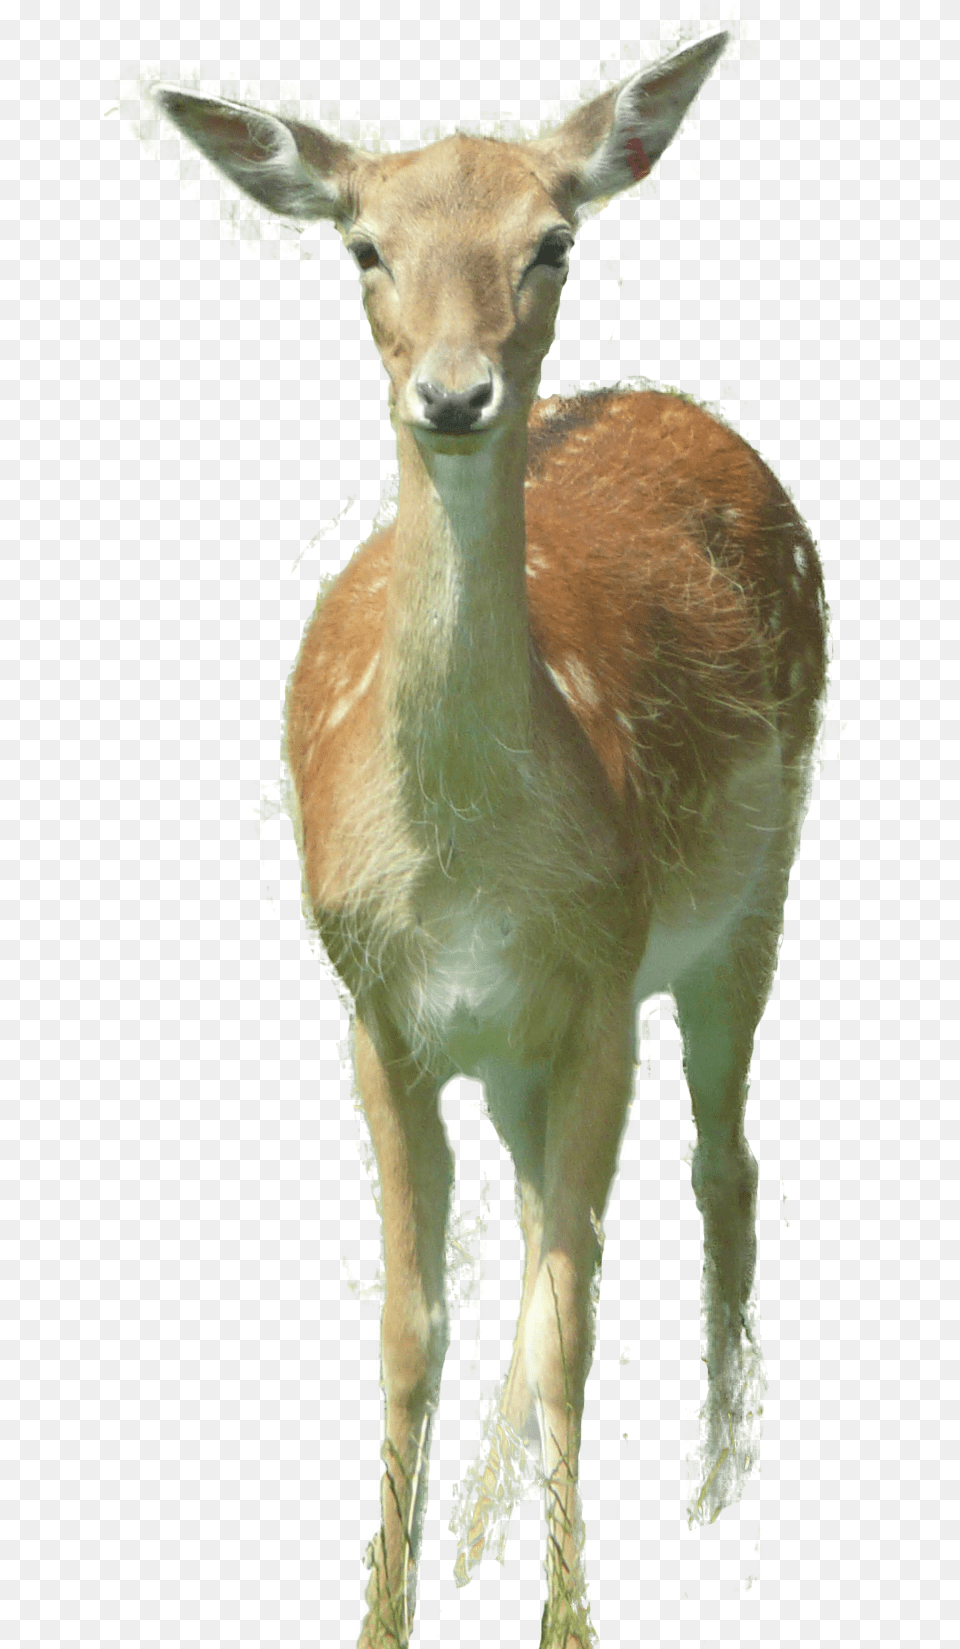 Deer Roe Deer, Animal, Antelope, Wildlife, Mammal Png Image